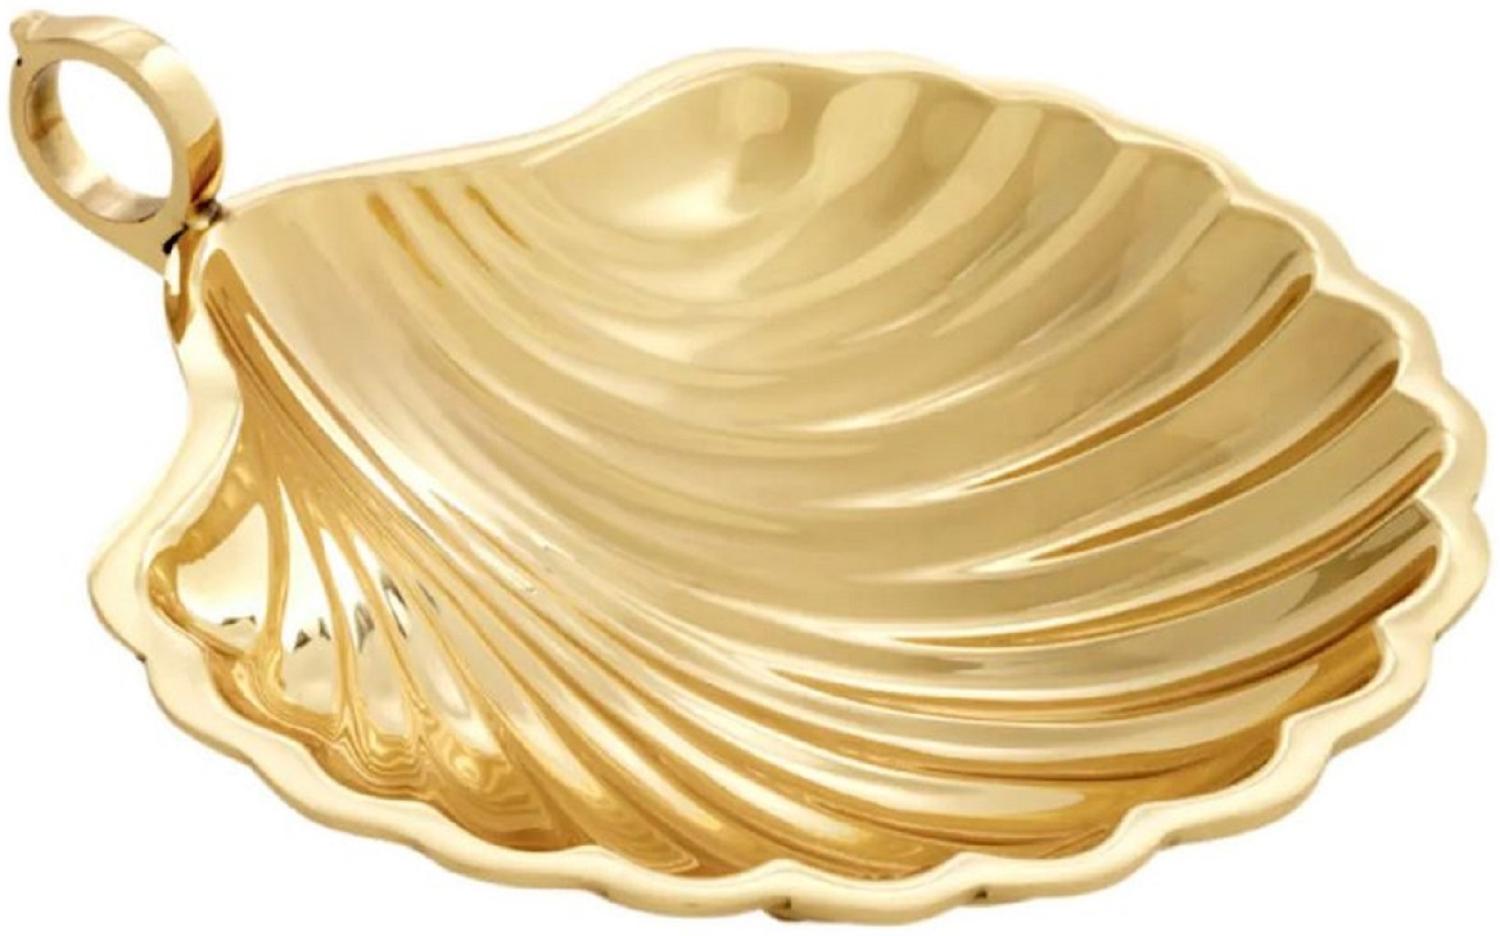 Casa Padrino Luxus Deko Schale in Muschelform Gold 22,5 x 19,5 x H. 5,5 cm - Dekorative Messing Schale mit Tragegriff - Luxus Deko Accessoires - Luxus Qualität Bild 1